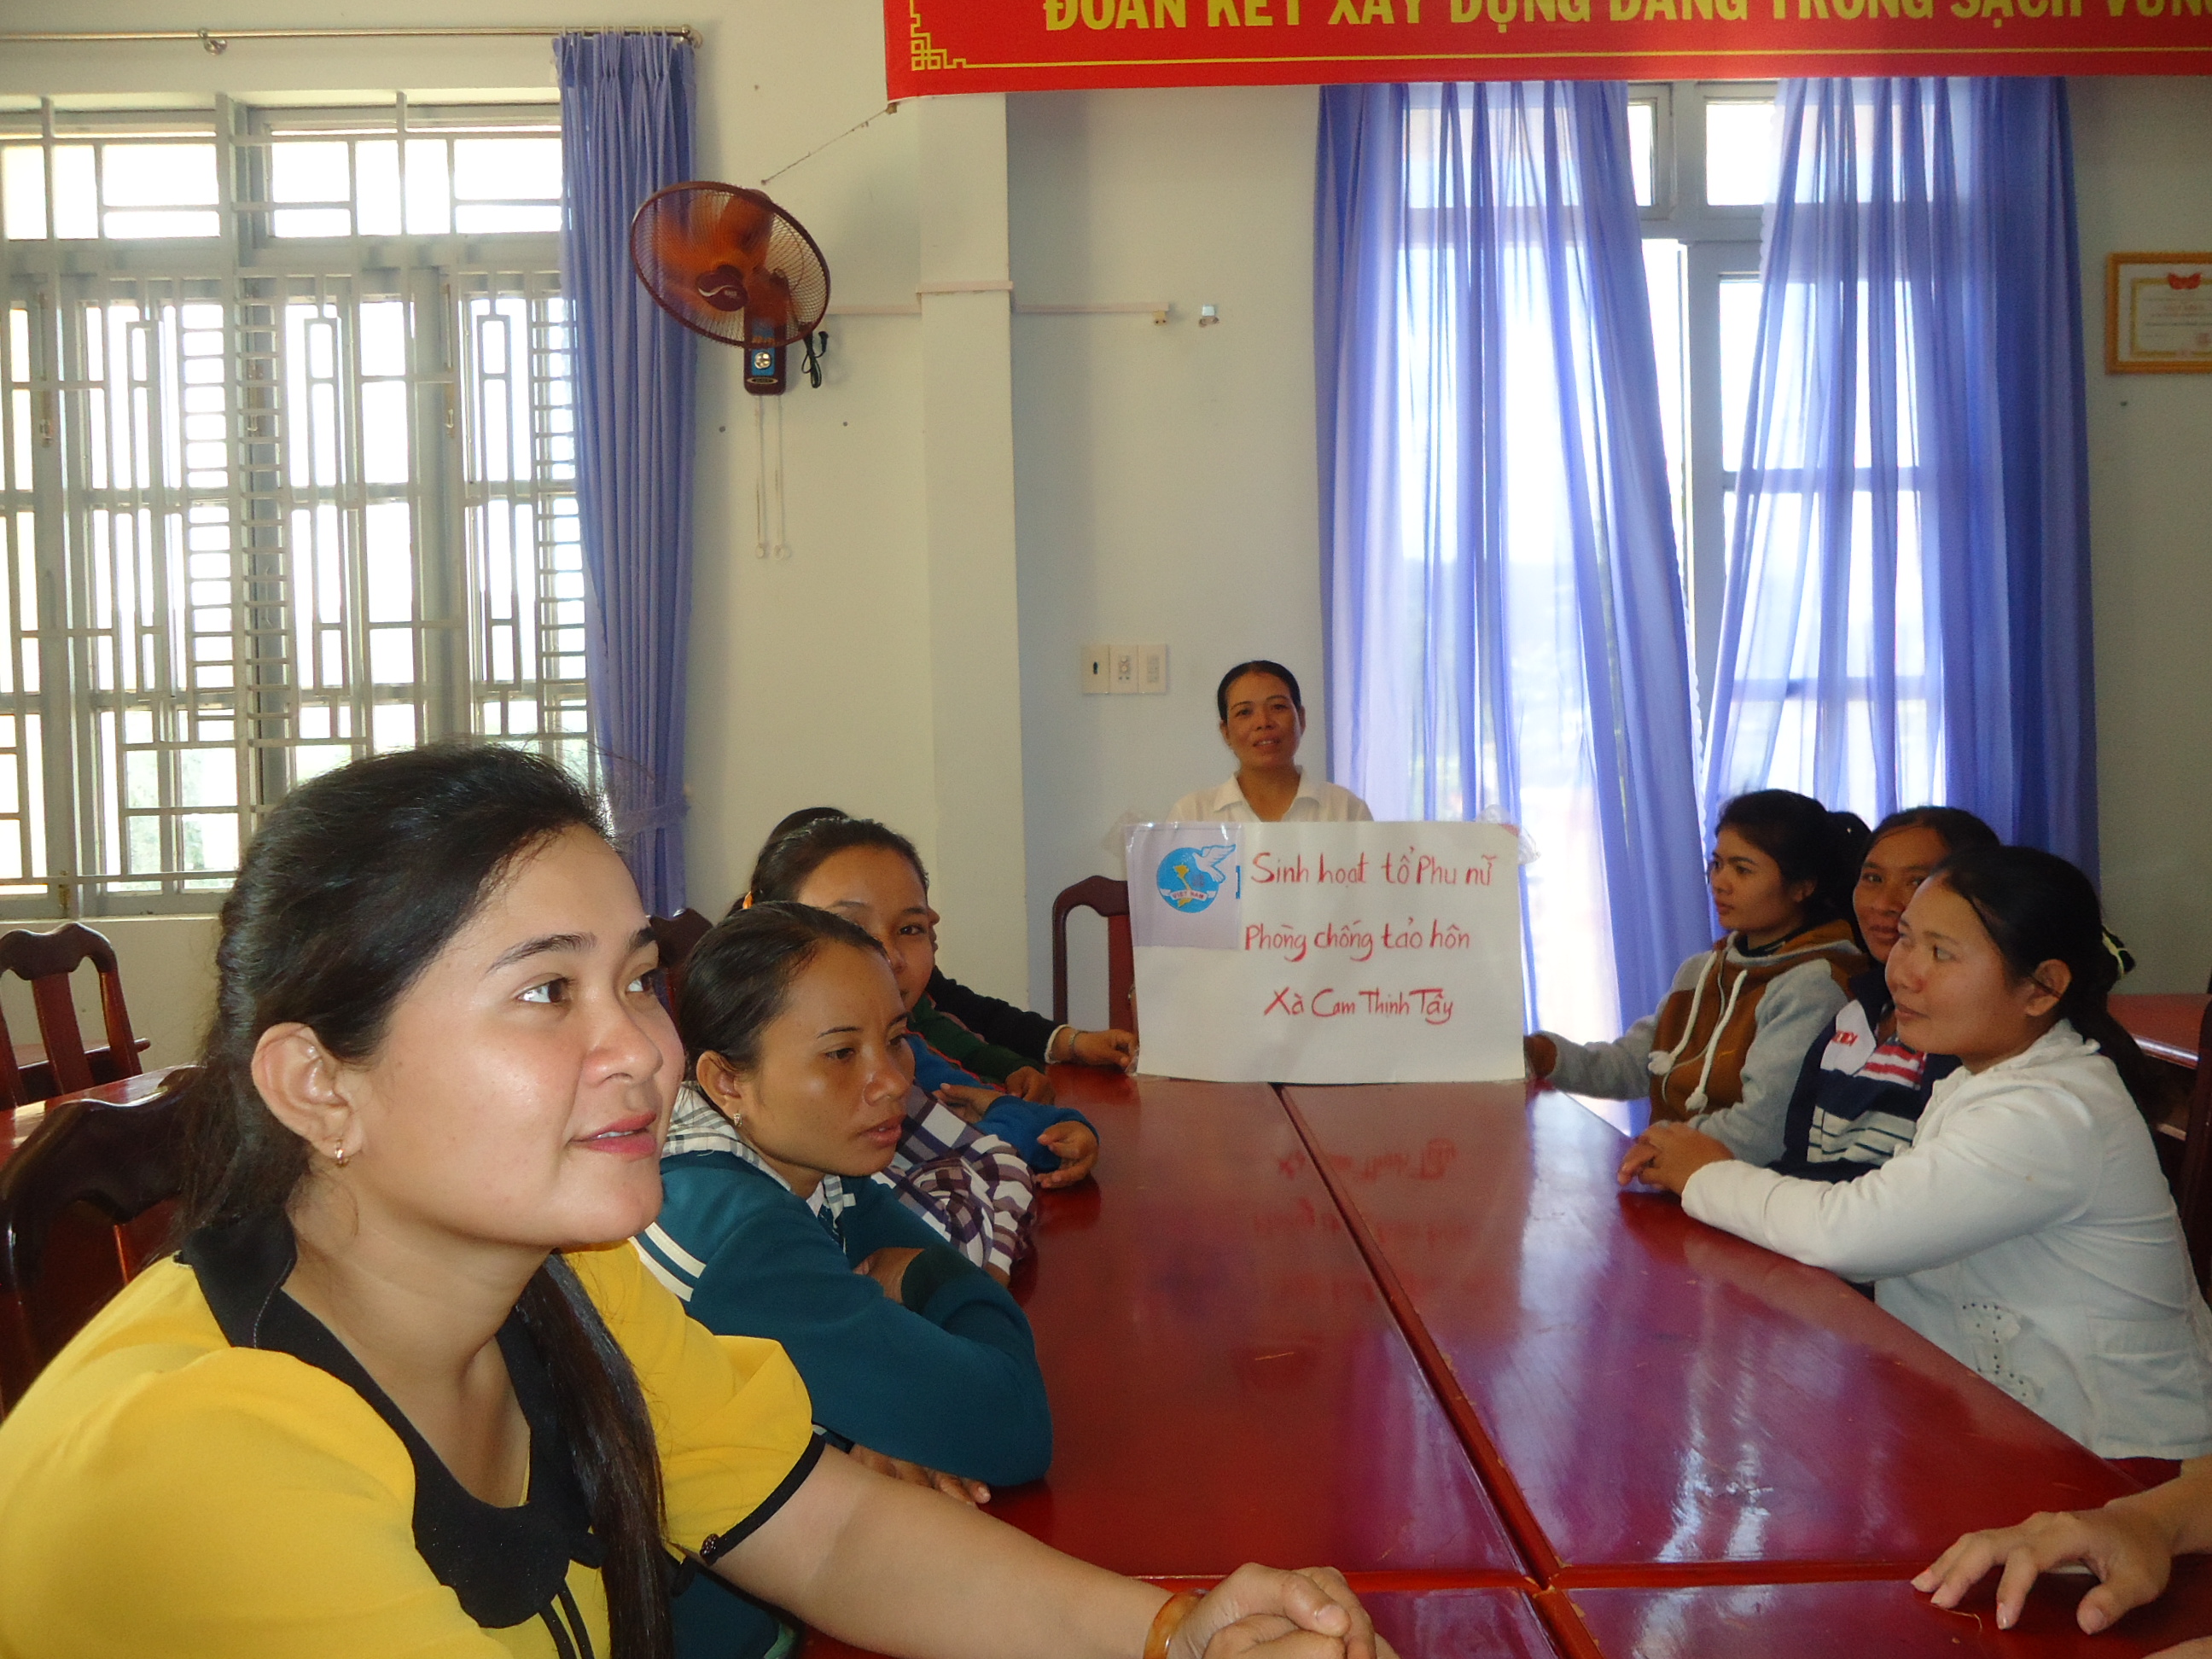 Chị Dung đang chủ trì họp tổ phụ nữ phòng ngừa tảo hôn ( Xã Cam Thịnh Tây thành phố Cam Ranh).JPG (2.27 MB)